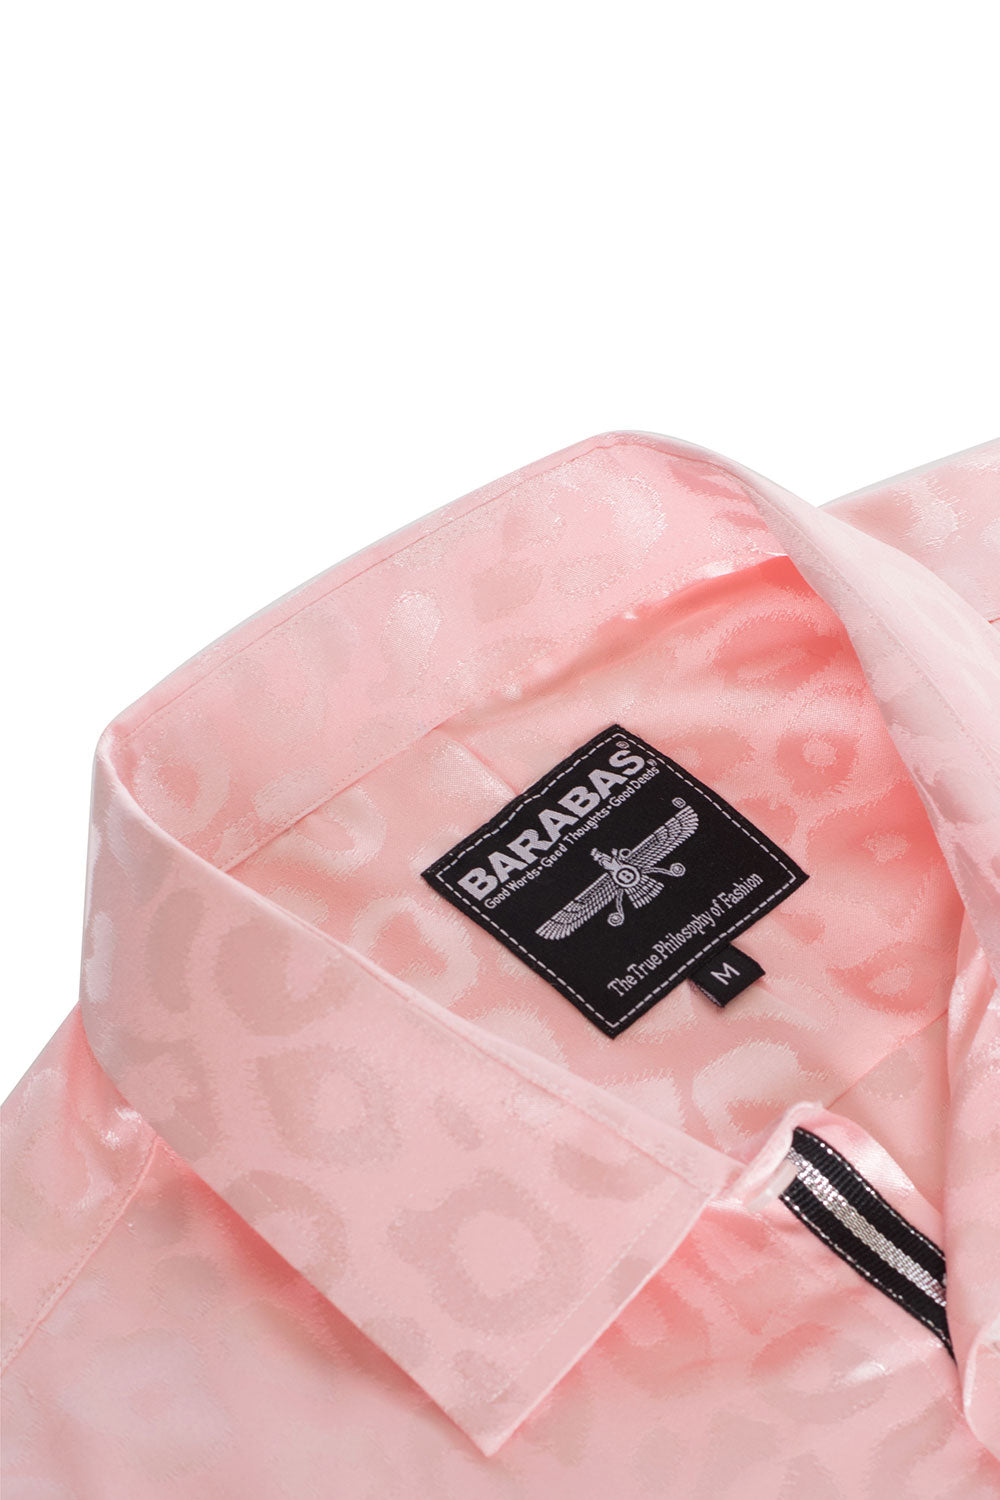 BARABAS Men textured leopard design pattern button down Shirts B310 pink